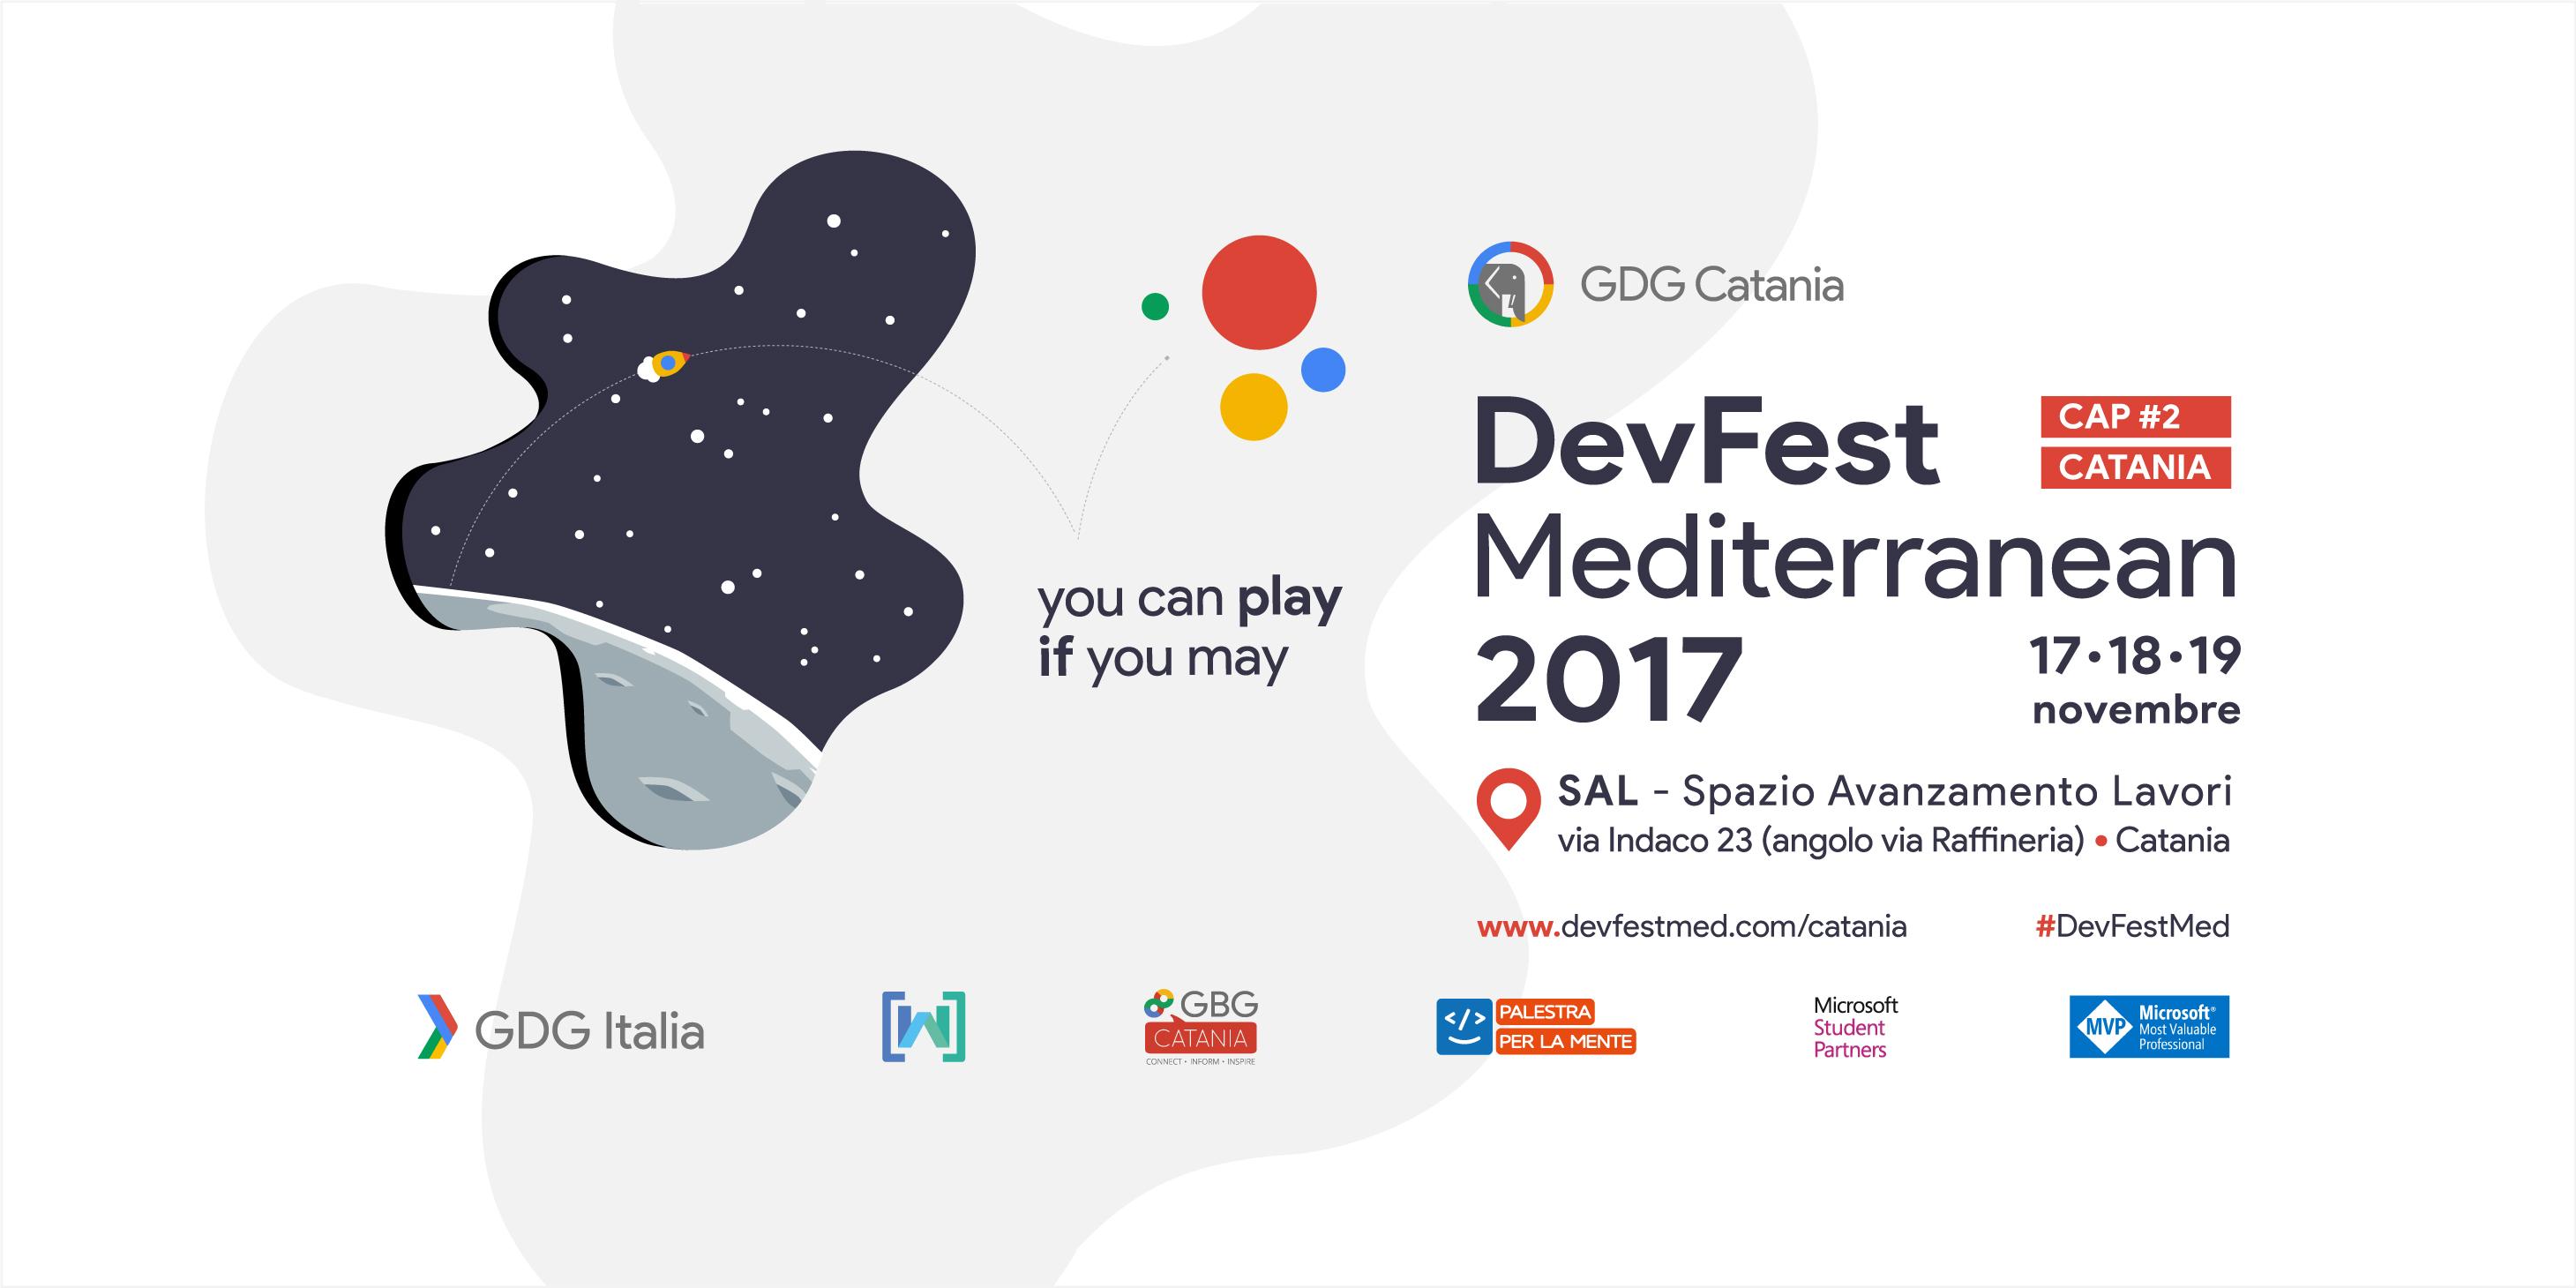 DevFest Mediterranean 2017 Cap II